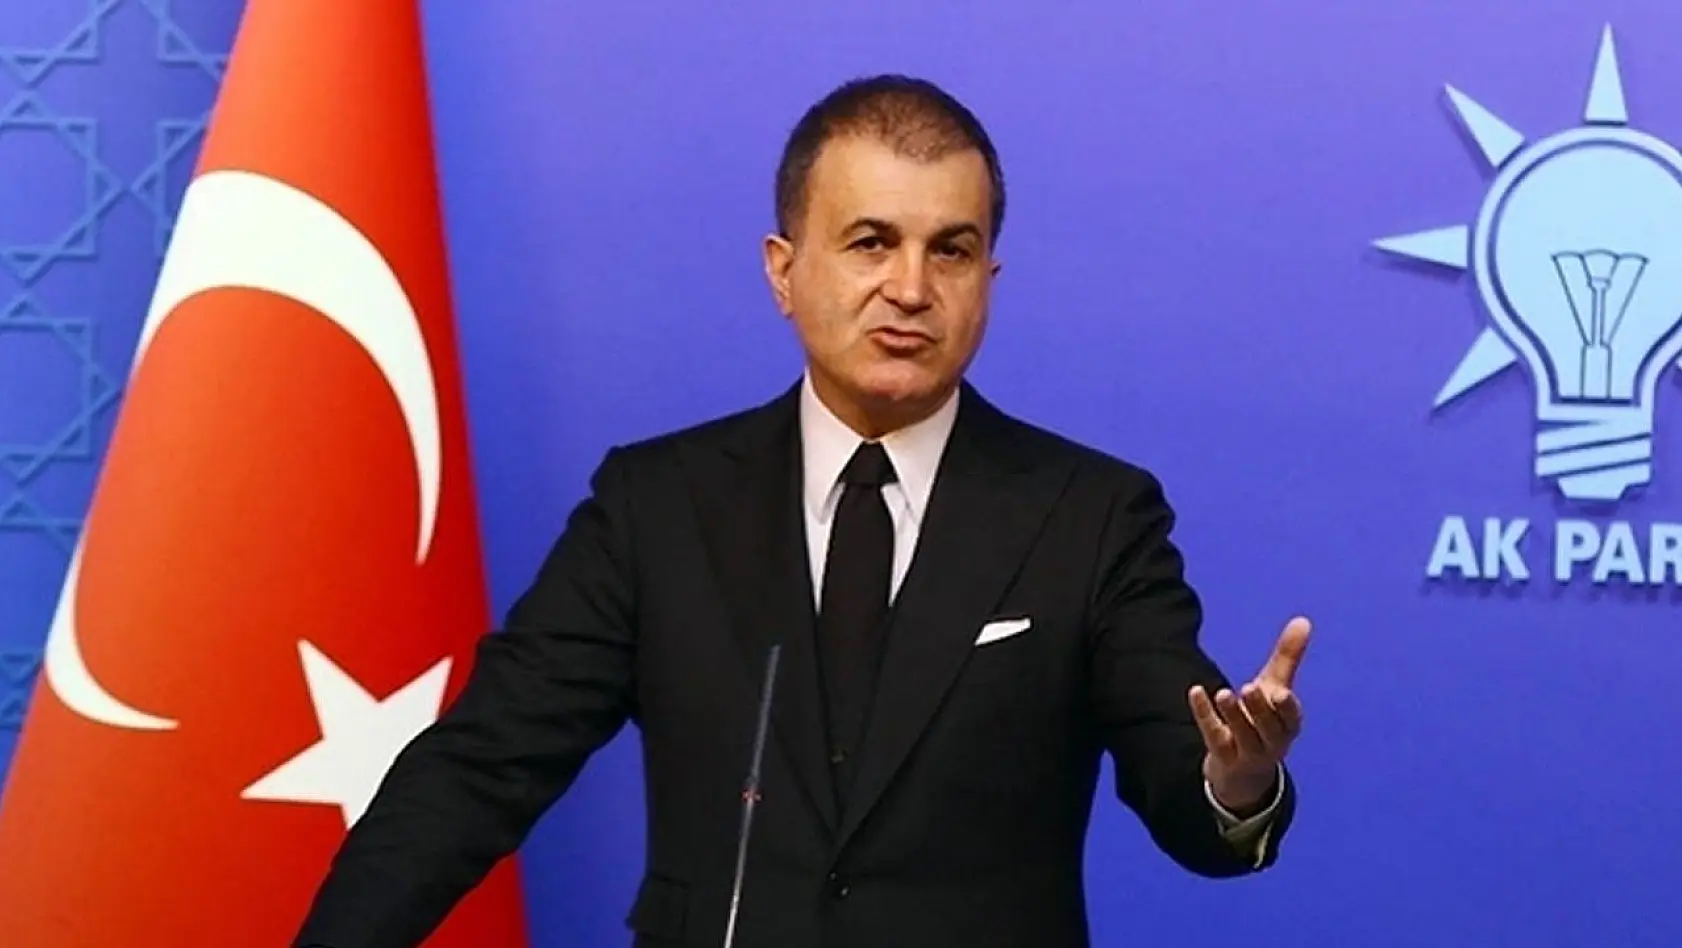 Kaftancıoğlu'nun Skandal Sözlerine Ak Parti'den Sert Tepki